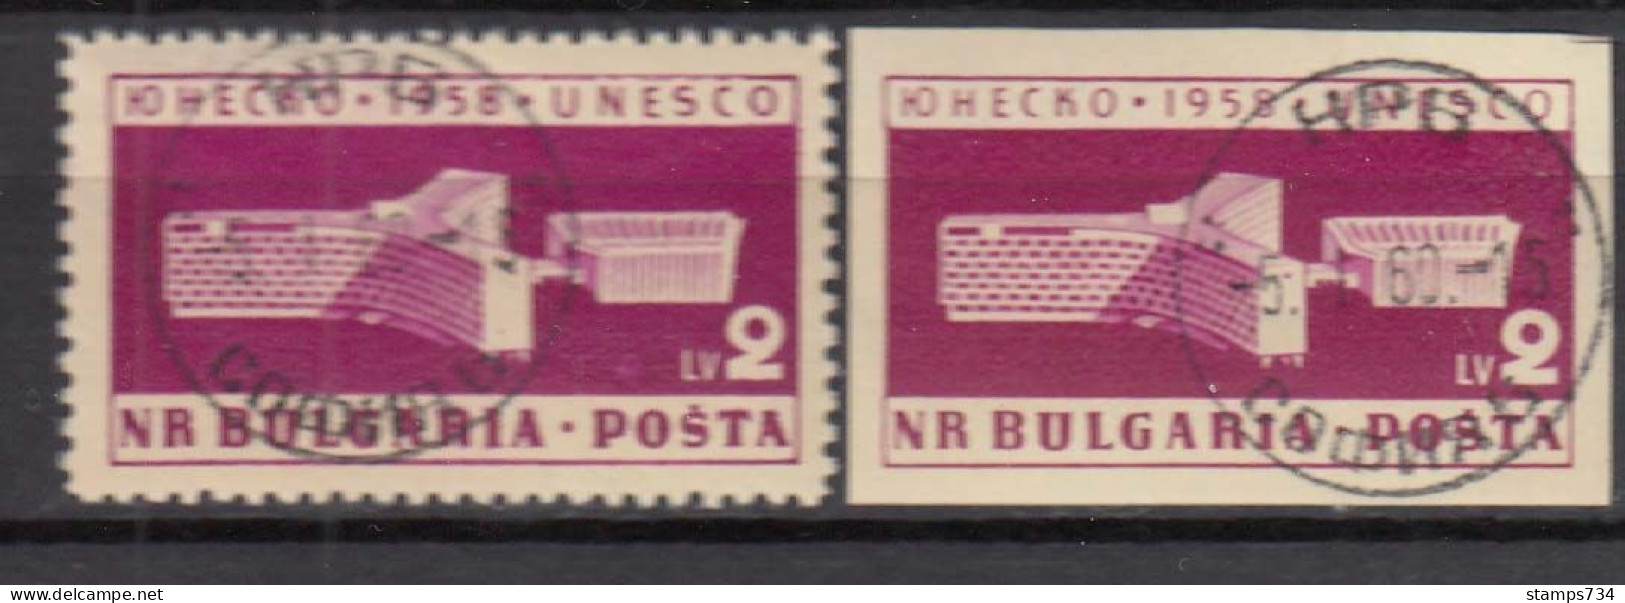 Bulgaria 1959 - UNESCO, Mi-Nr. 1103 A+B, Used - Gebraucht